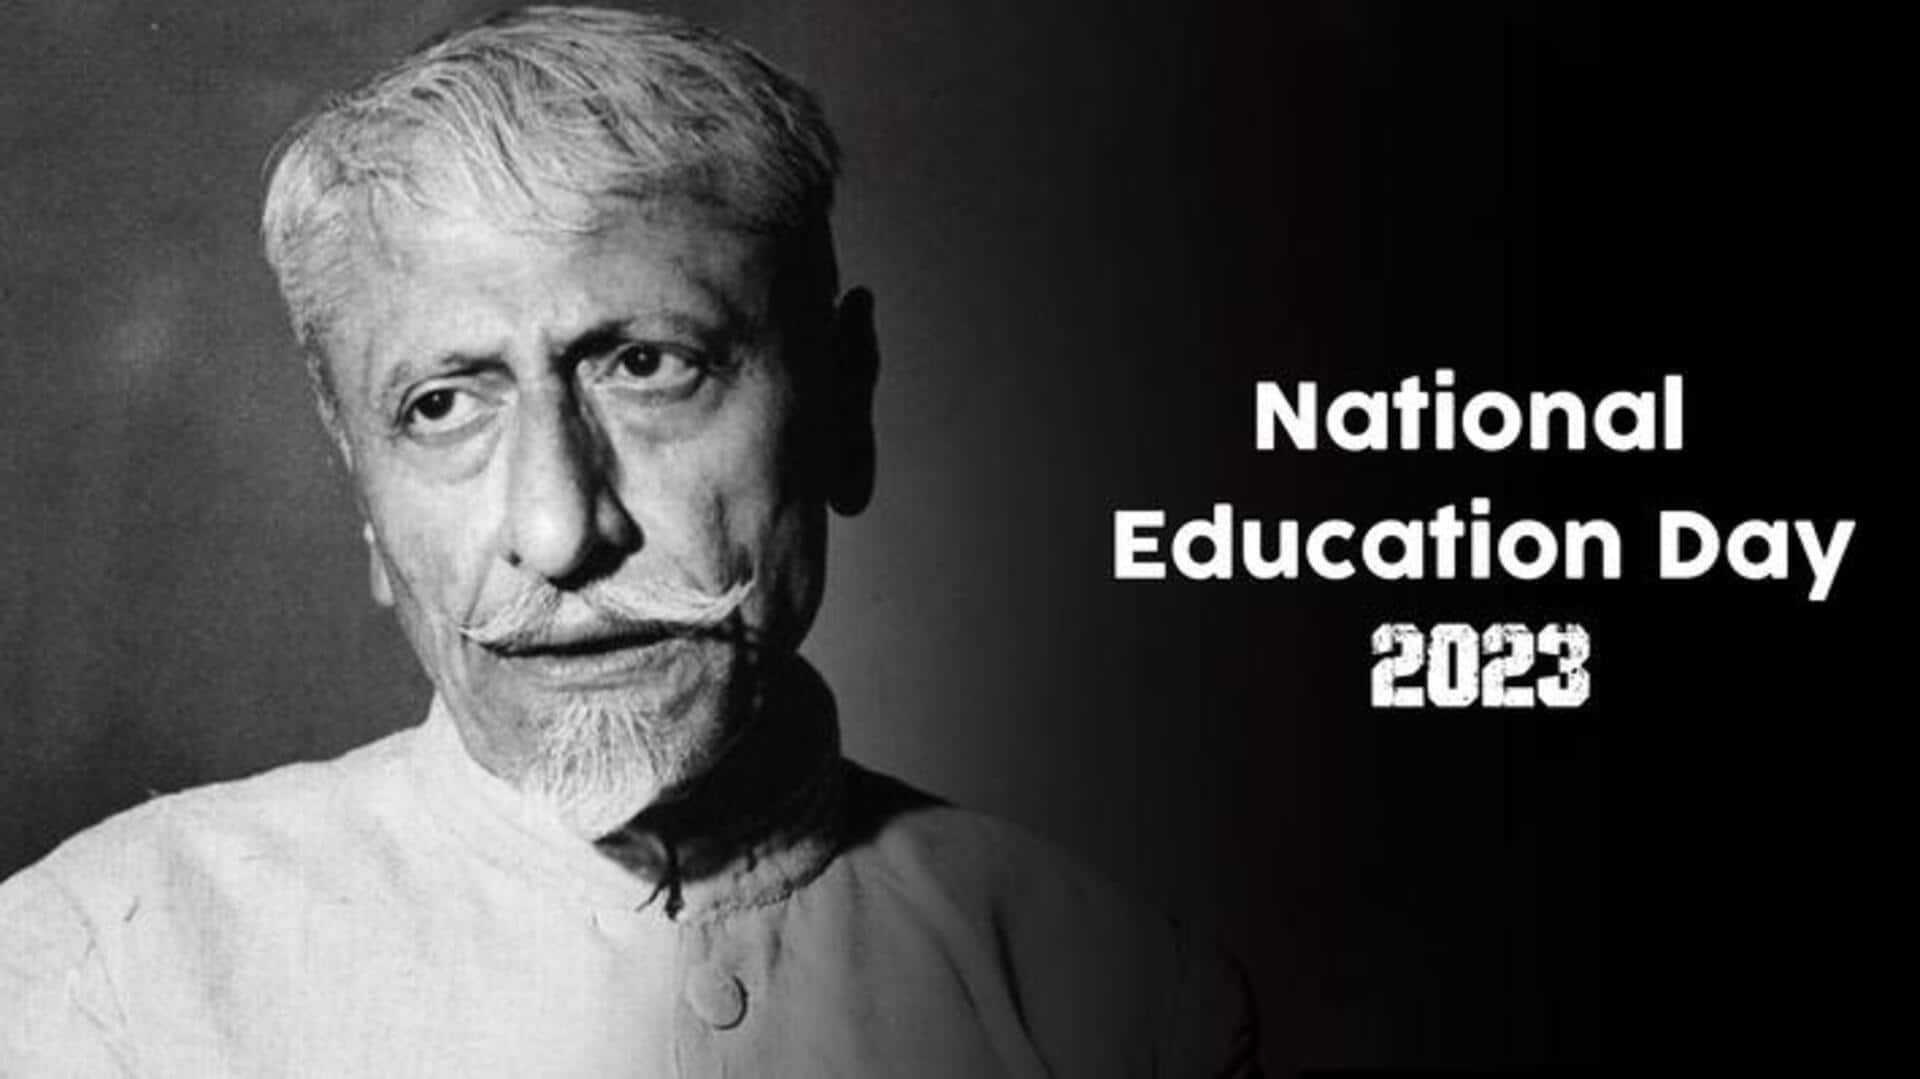 किसकी याद में मनाया जाता है राष्ट्रीय शिक्षा दिवस? जानिए इसका महत्व और इतिहास